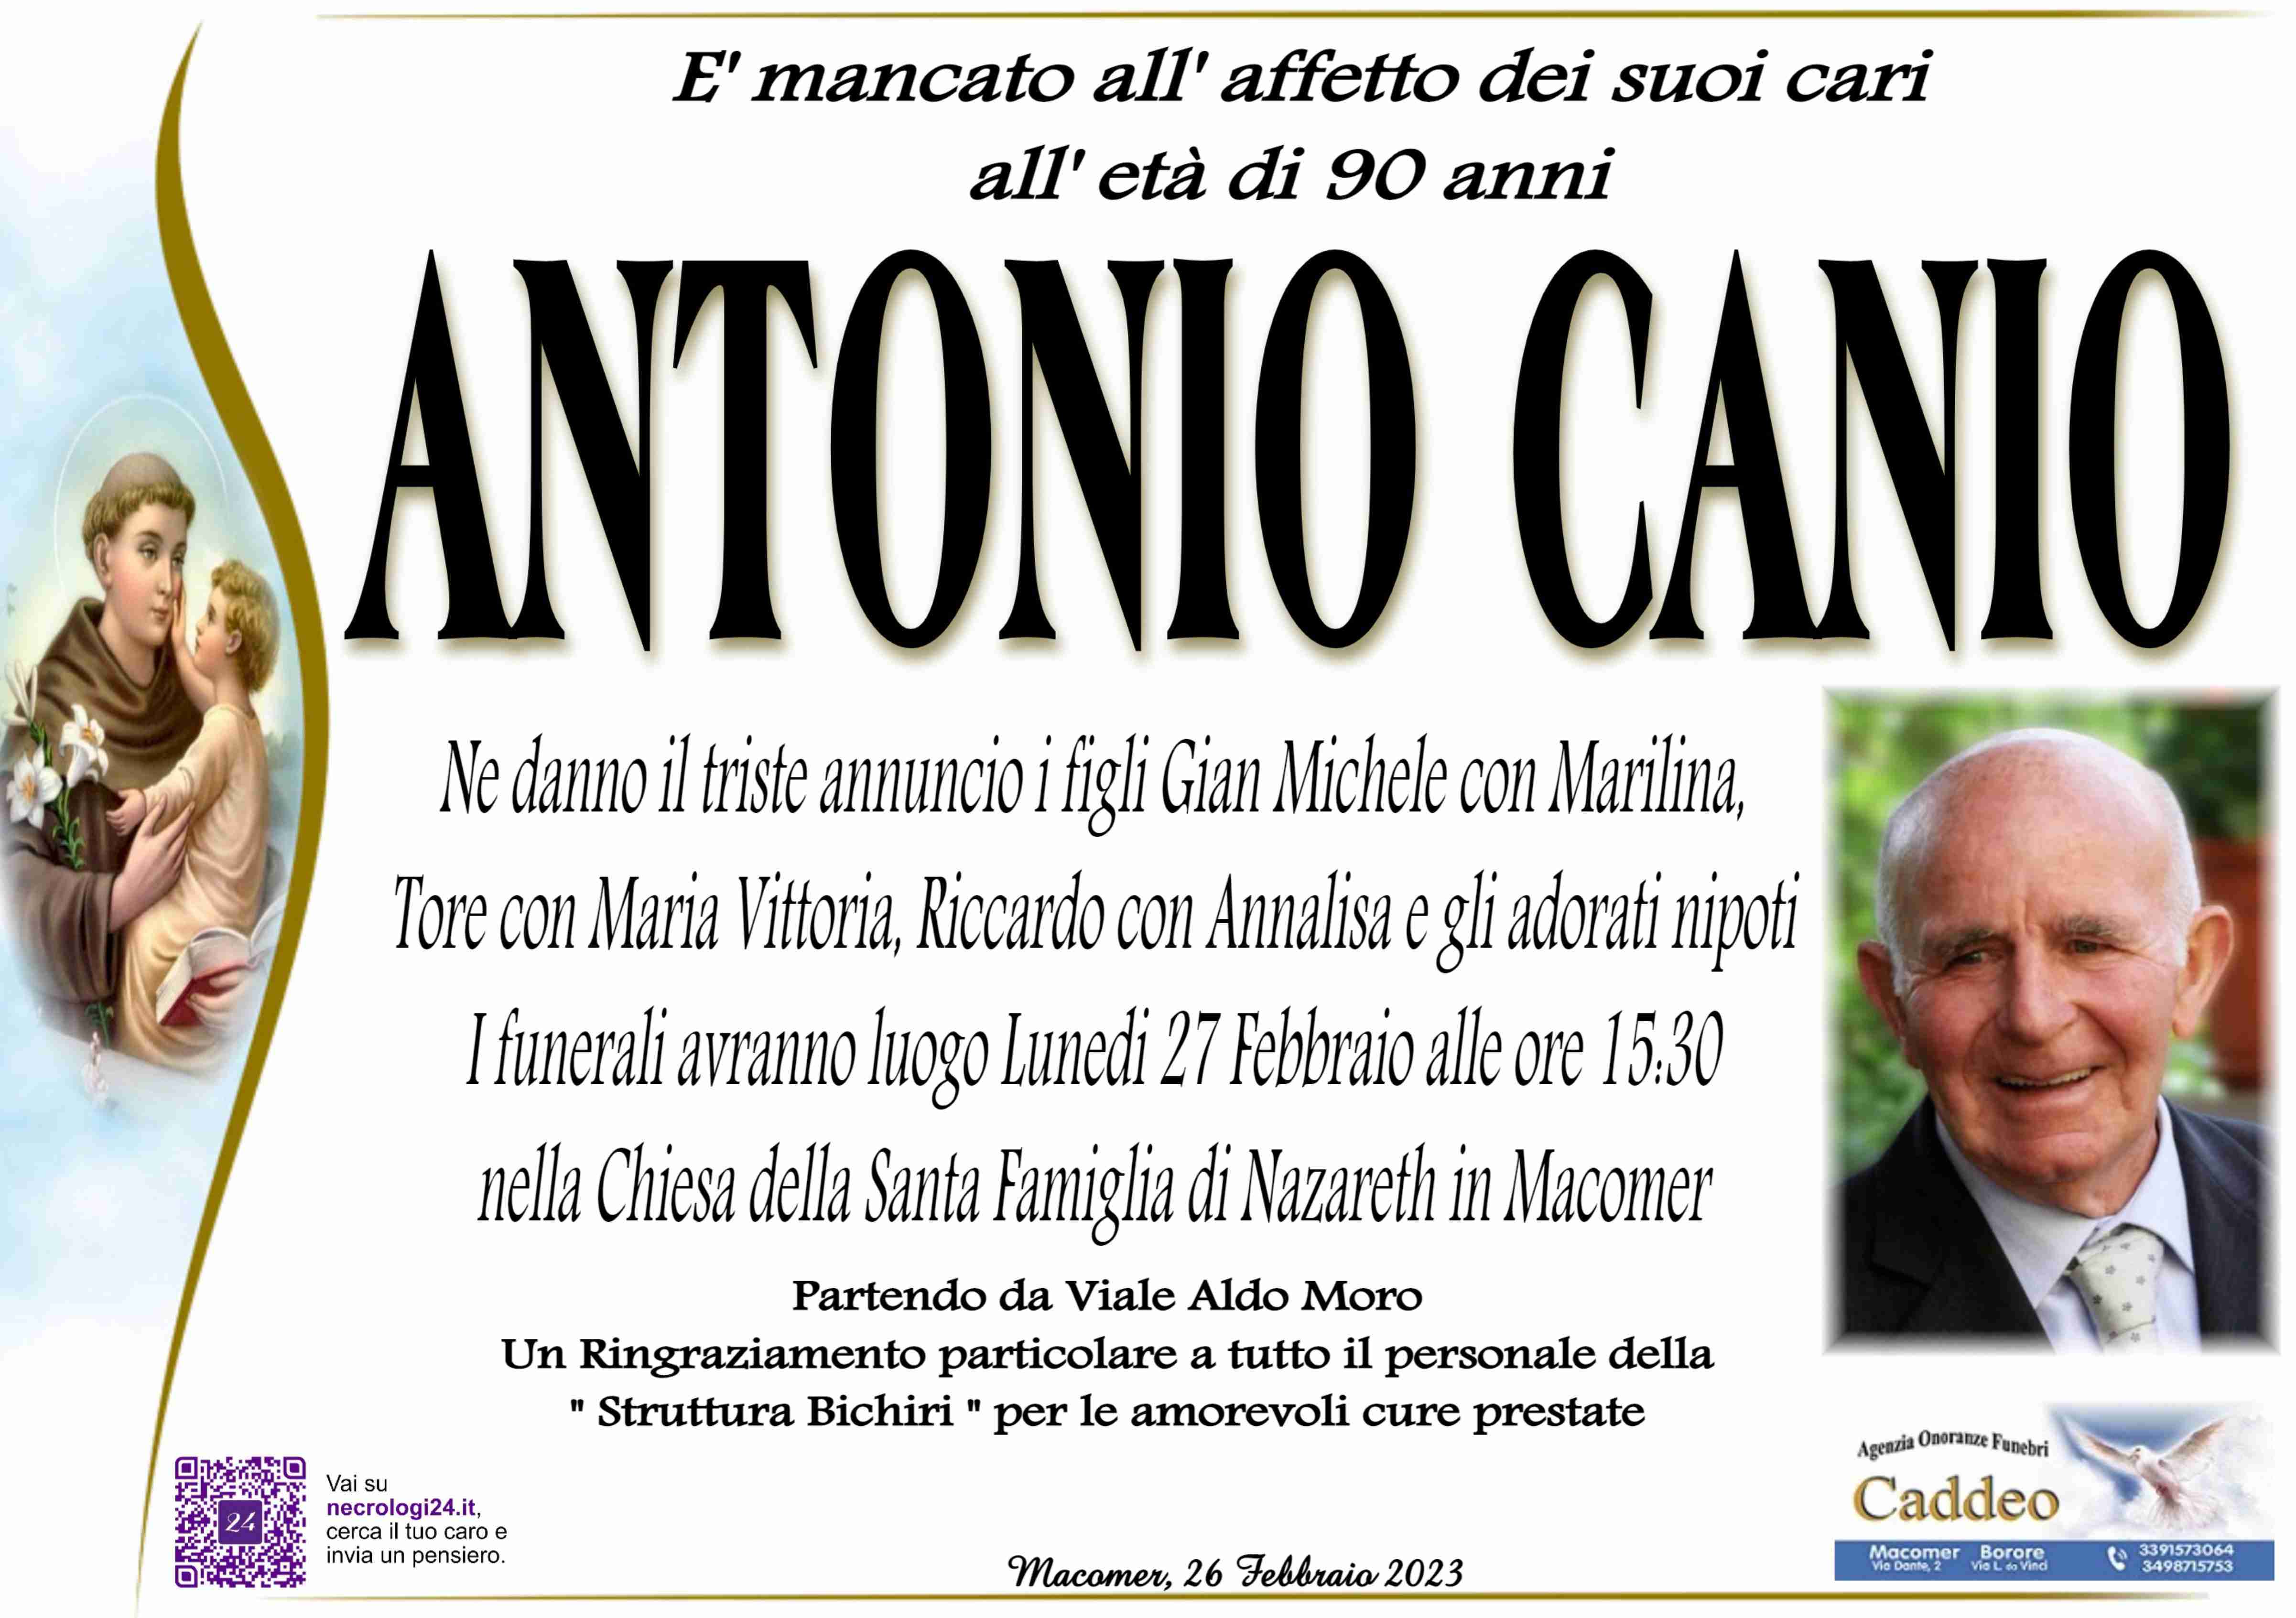 Antonio Canio